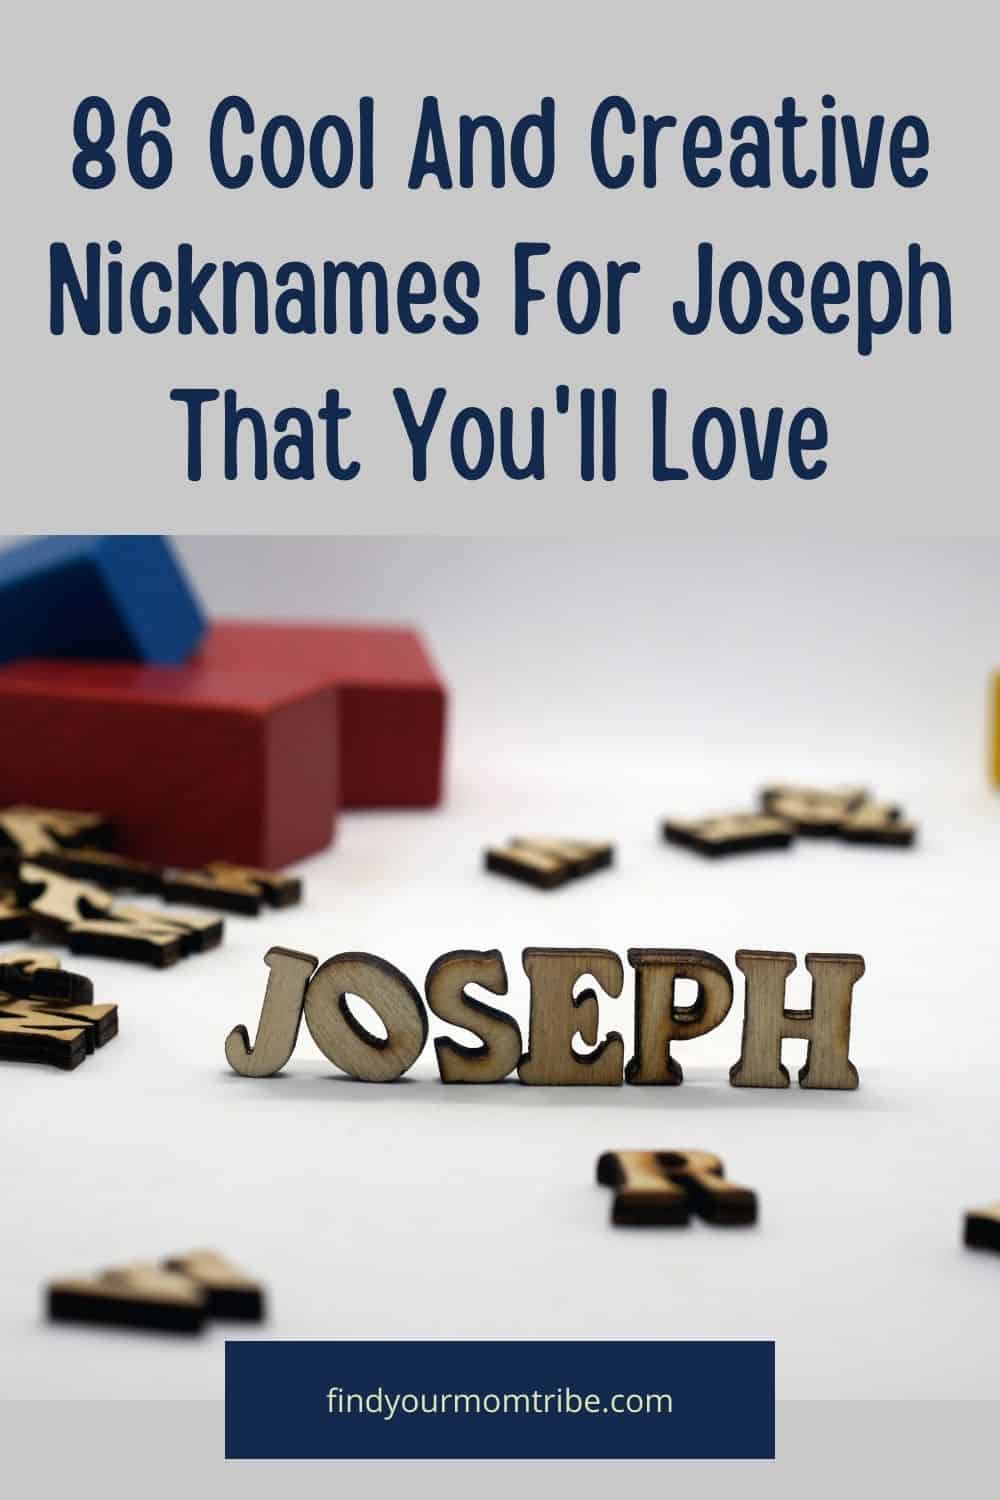 Pinterest nicknames for joseph 